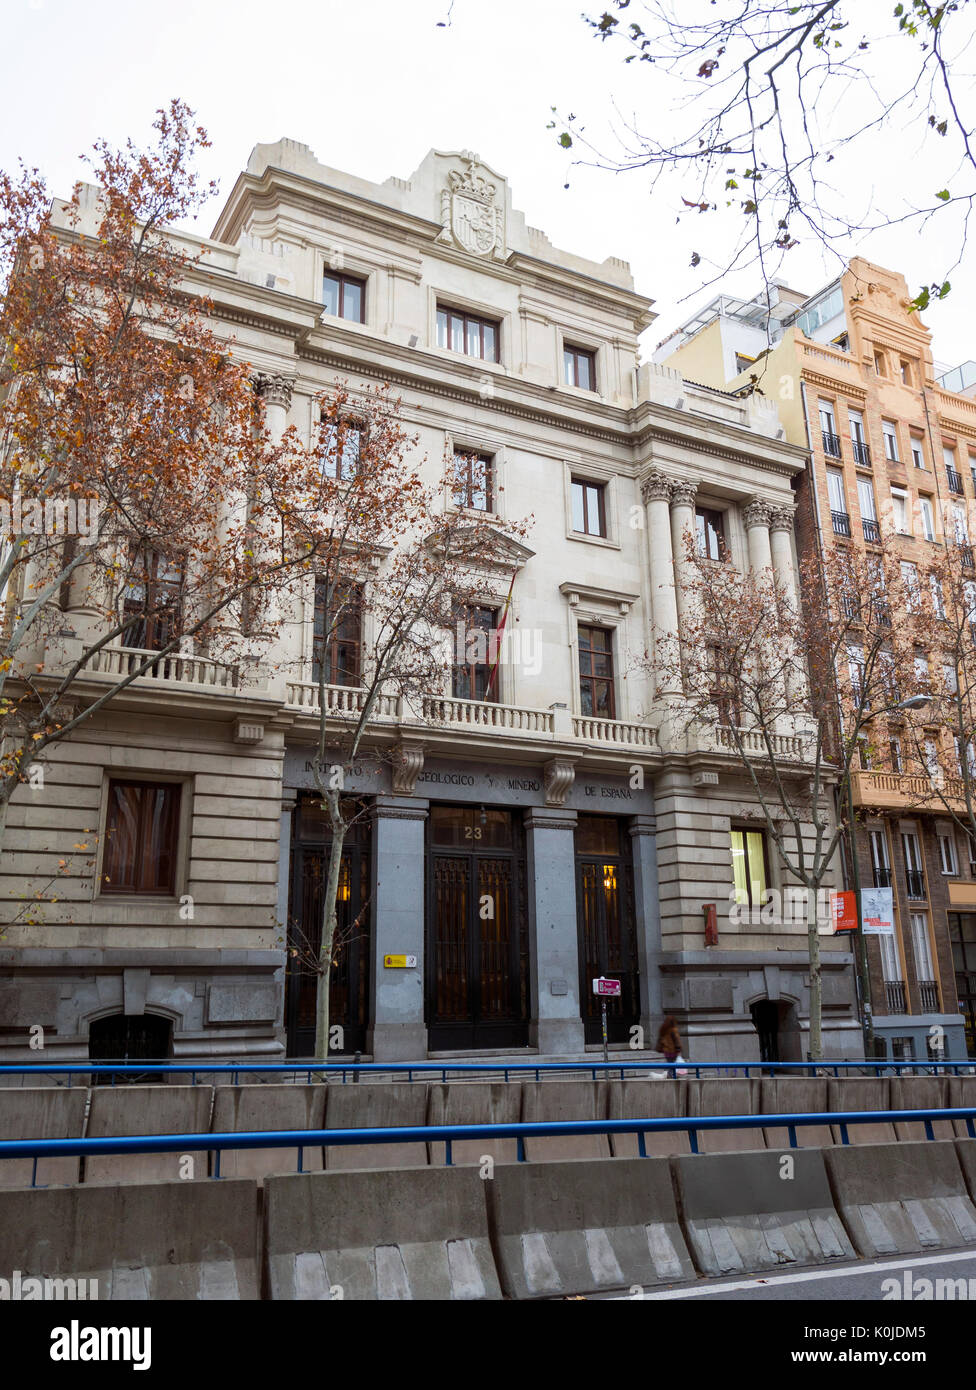 Instituto y museo geológico y minero. Madrid capital. España Stock Photo